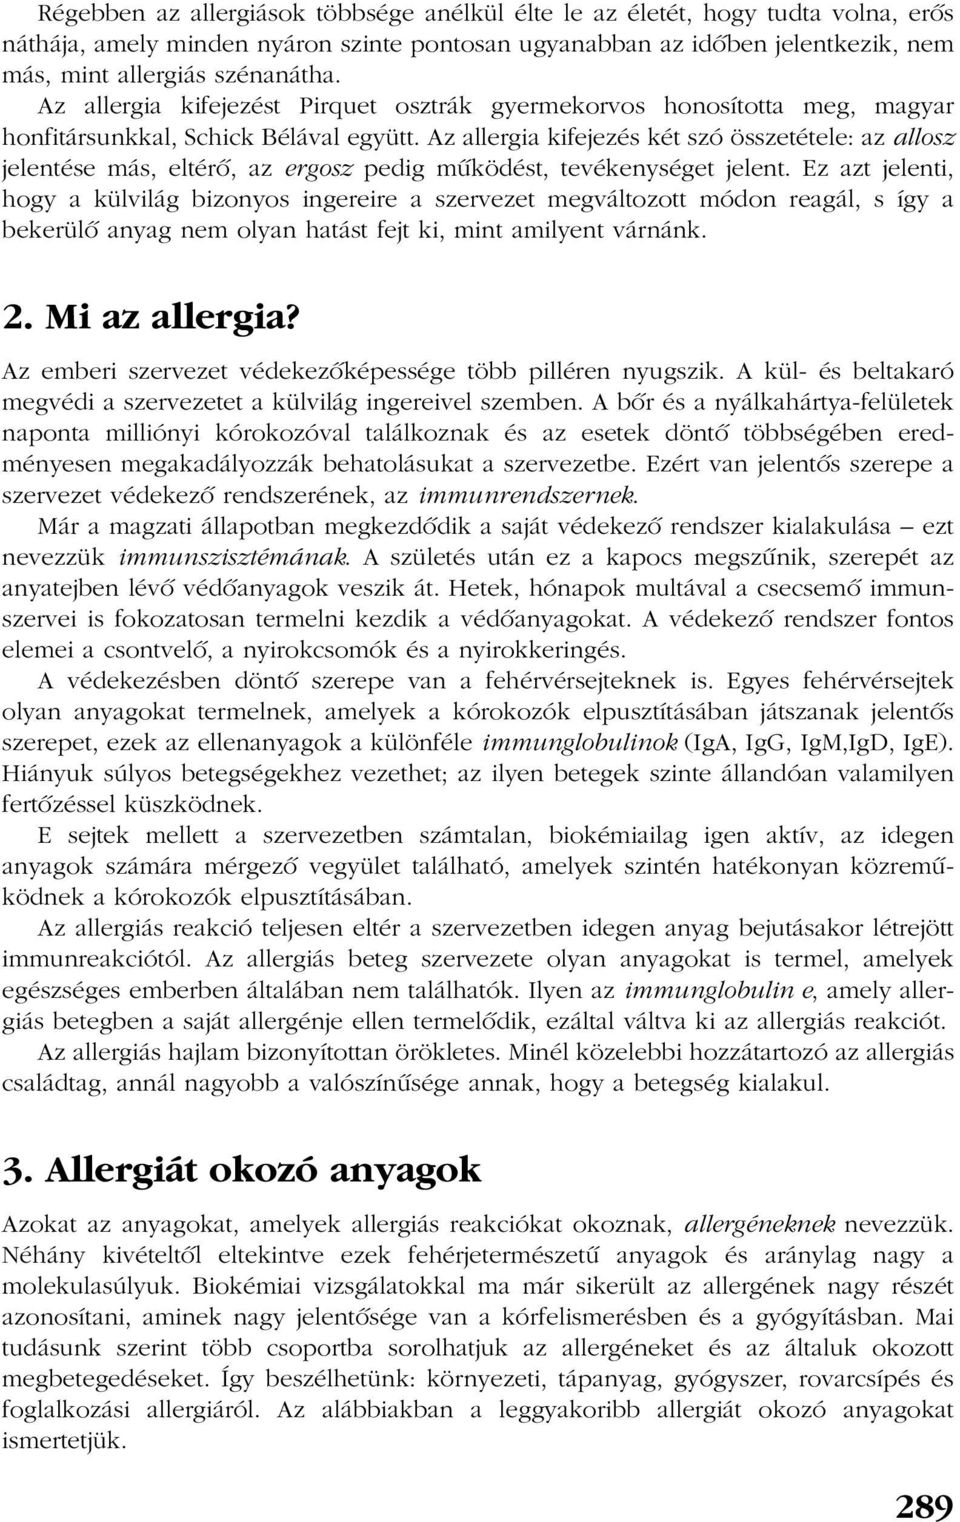 Az allergia kifejezés két szó összetétele: az allosz jelentése más, eltérõ, az ergosz pedig mûködést, tevékenységet jelent.